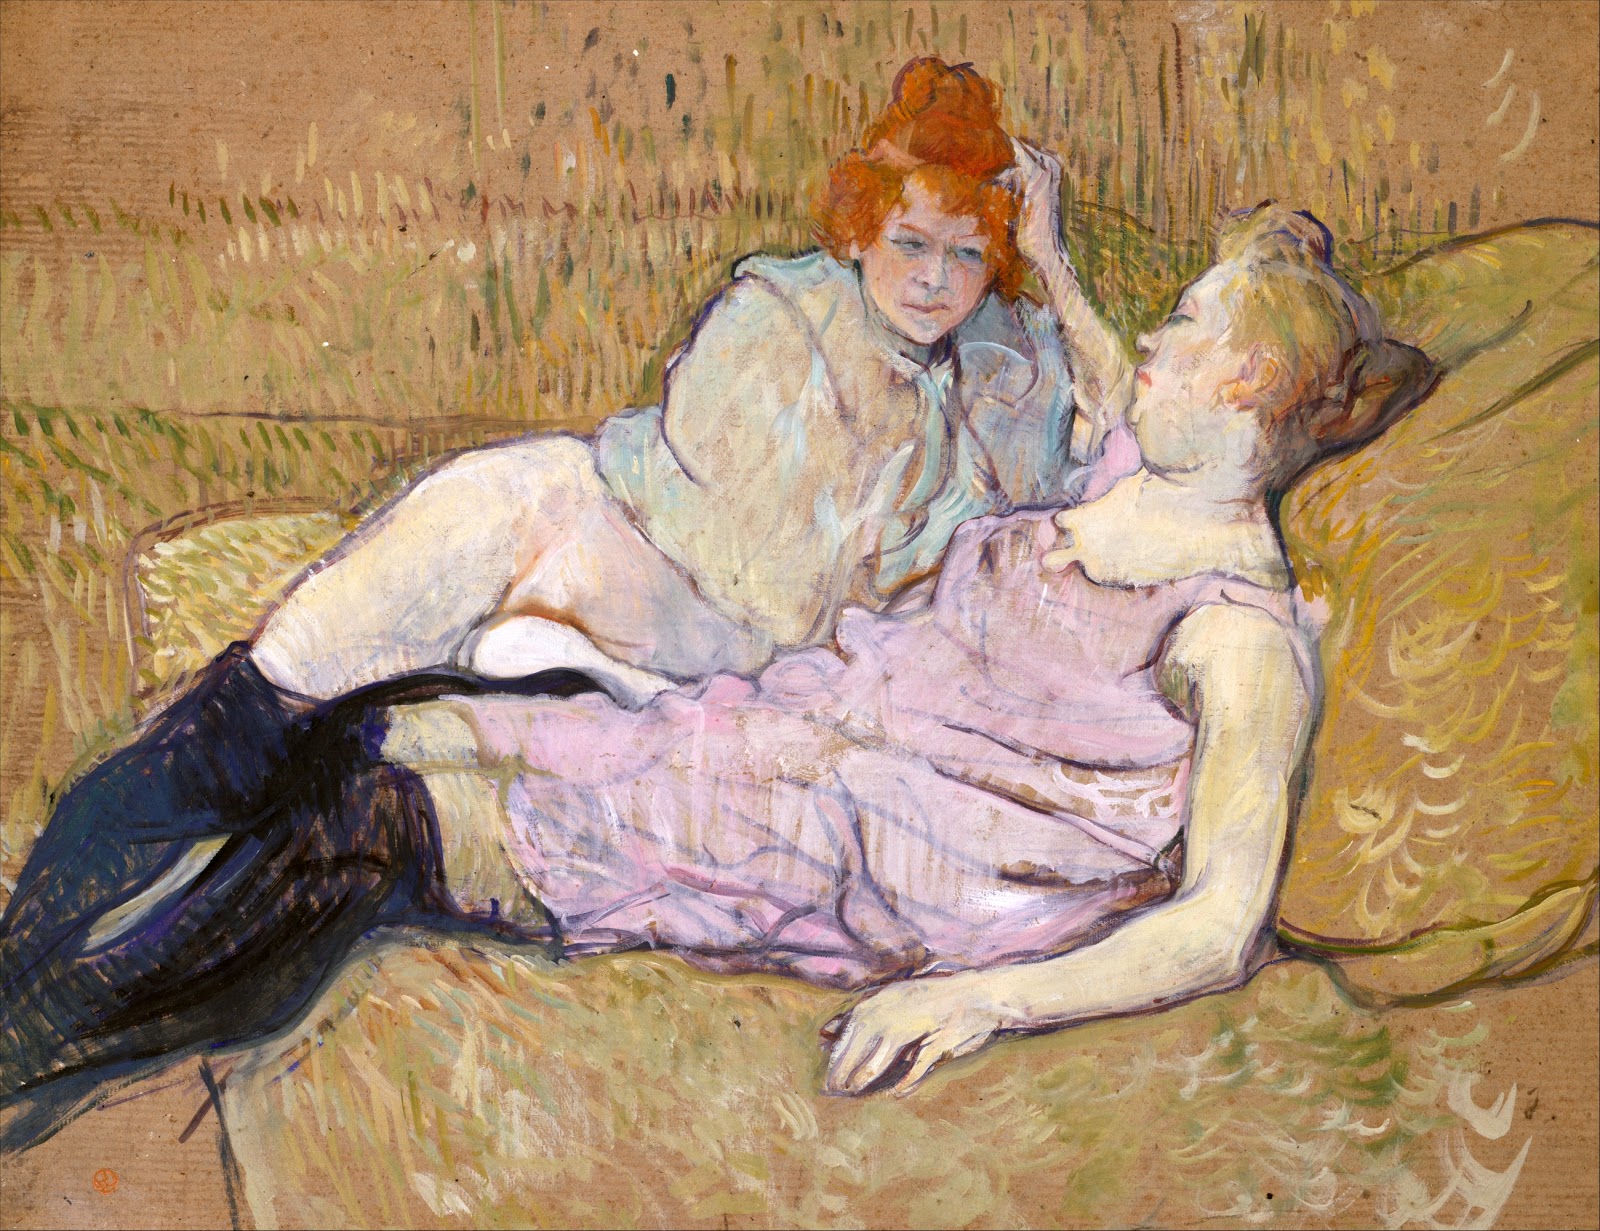 Henri+de+Toulouse+Lautrec-1864-1901 (123).jpg